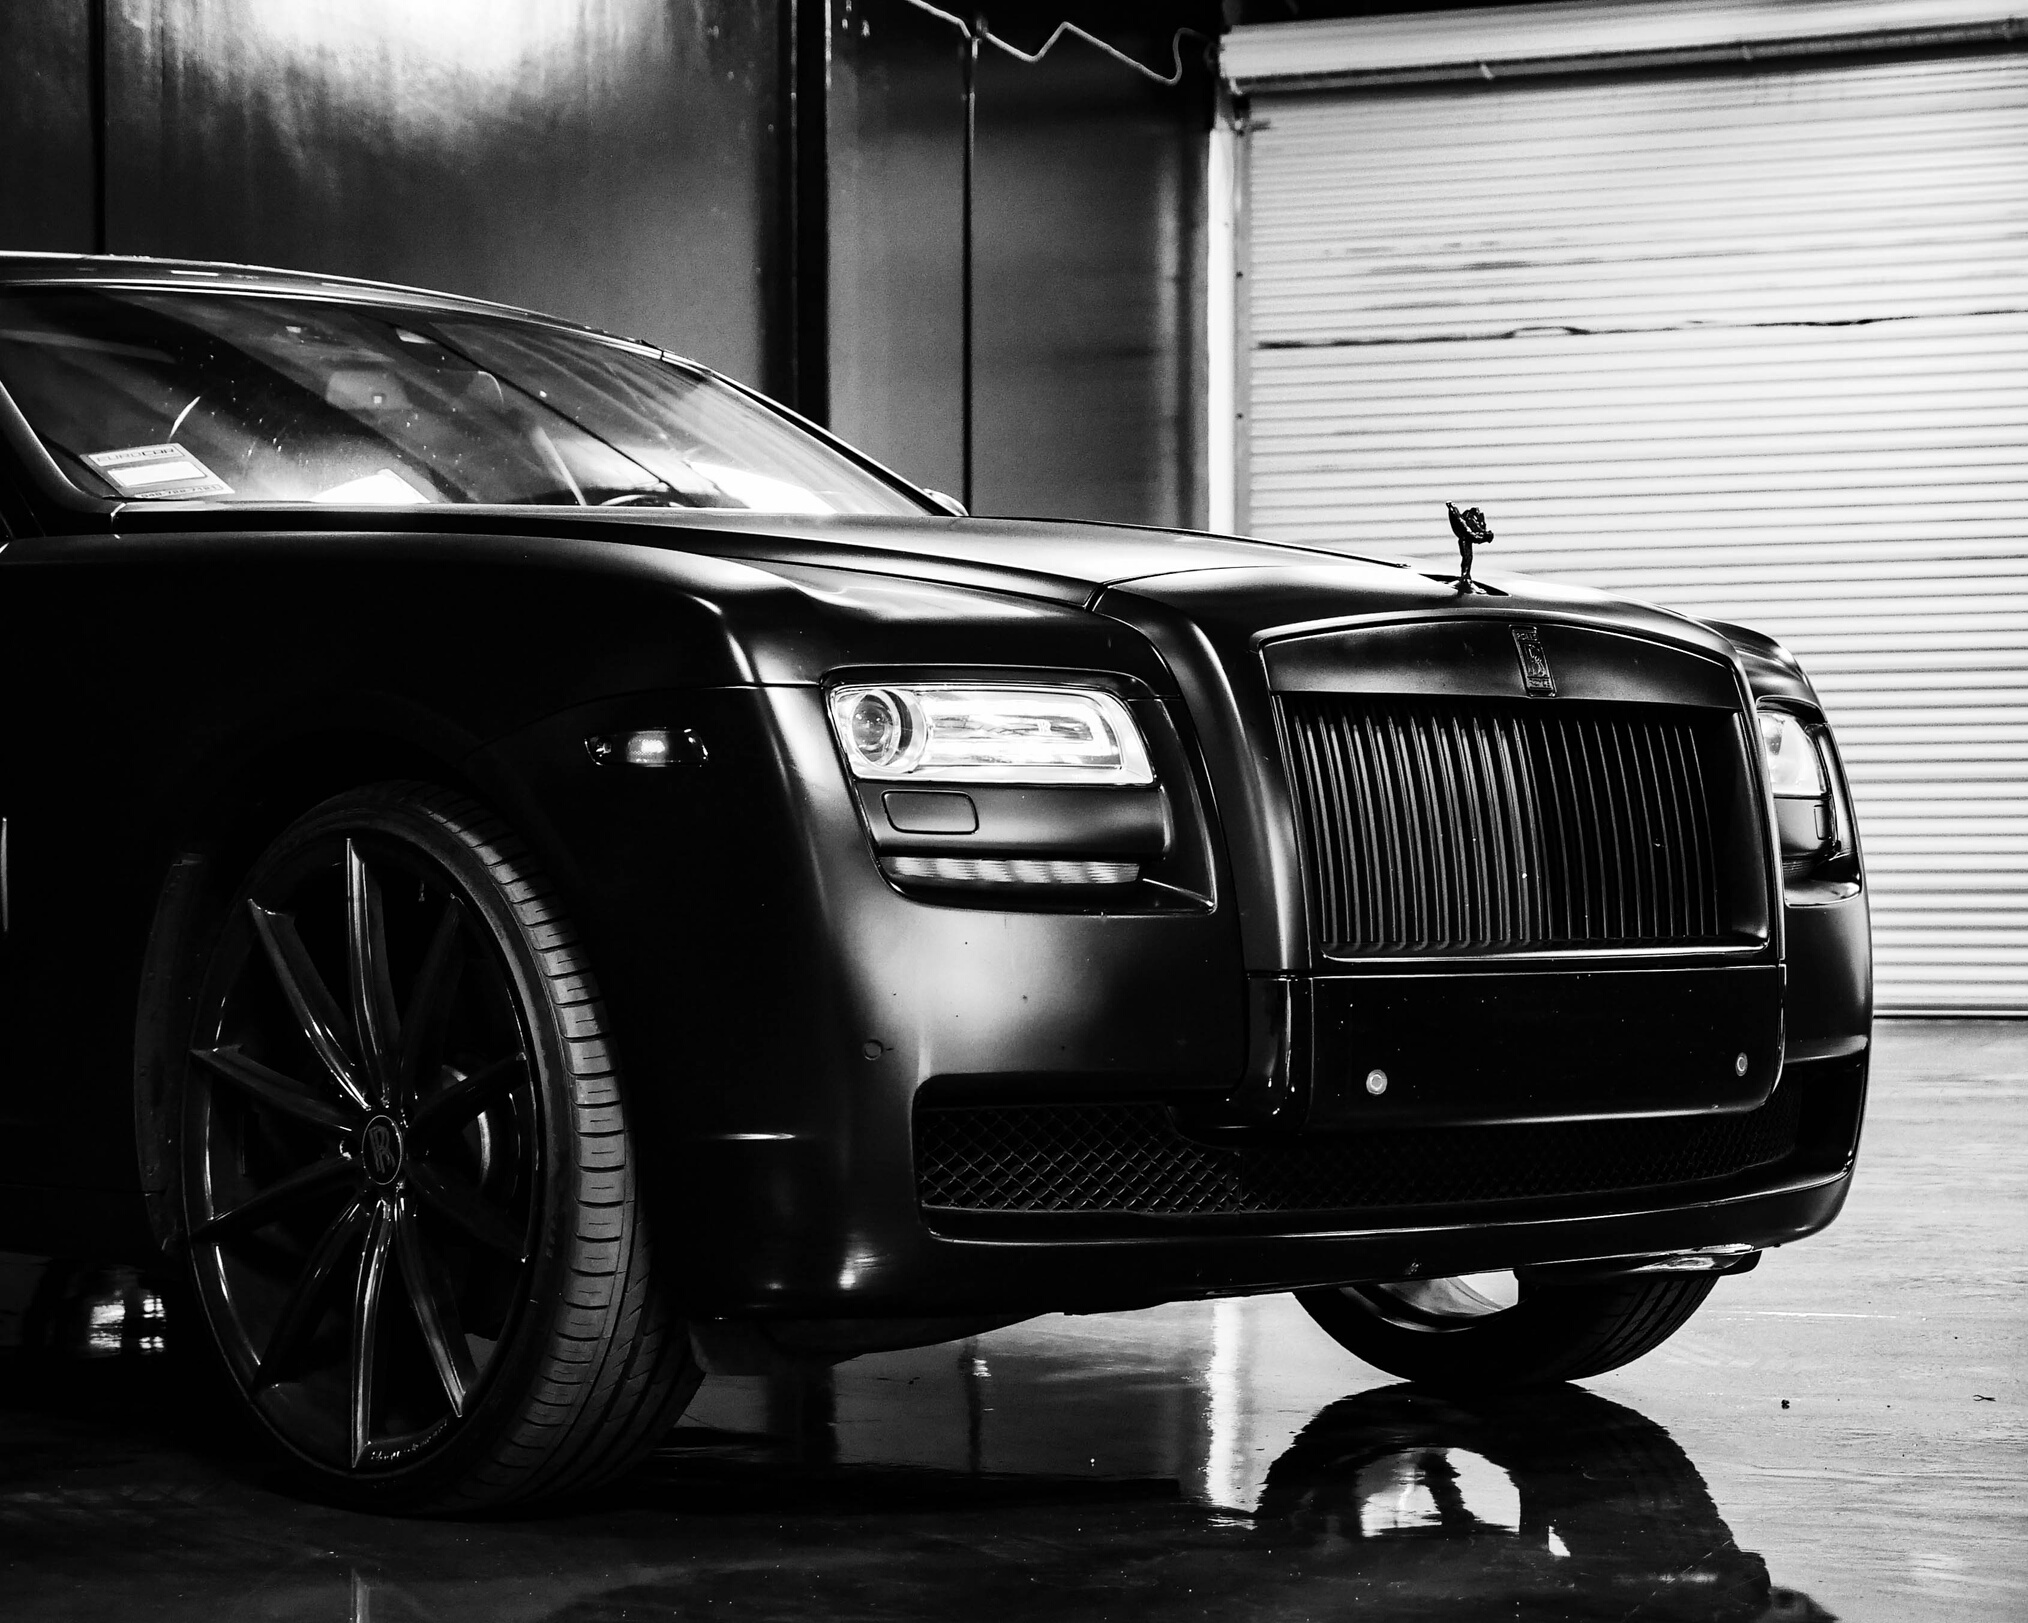 Details of expensive black car in garage